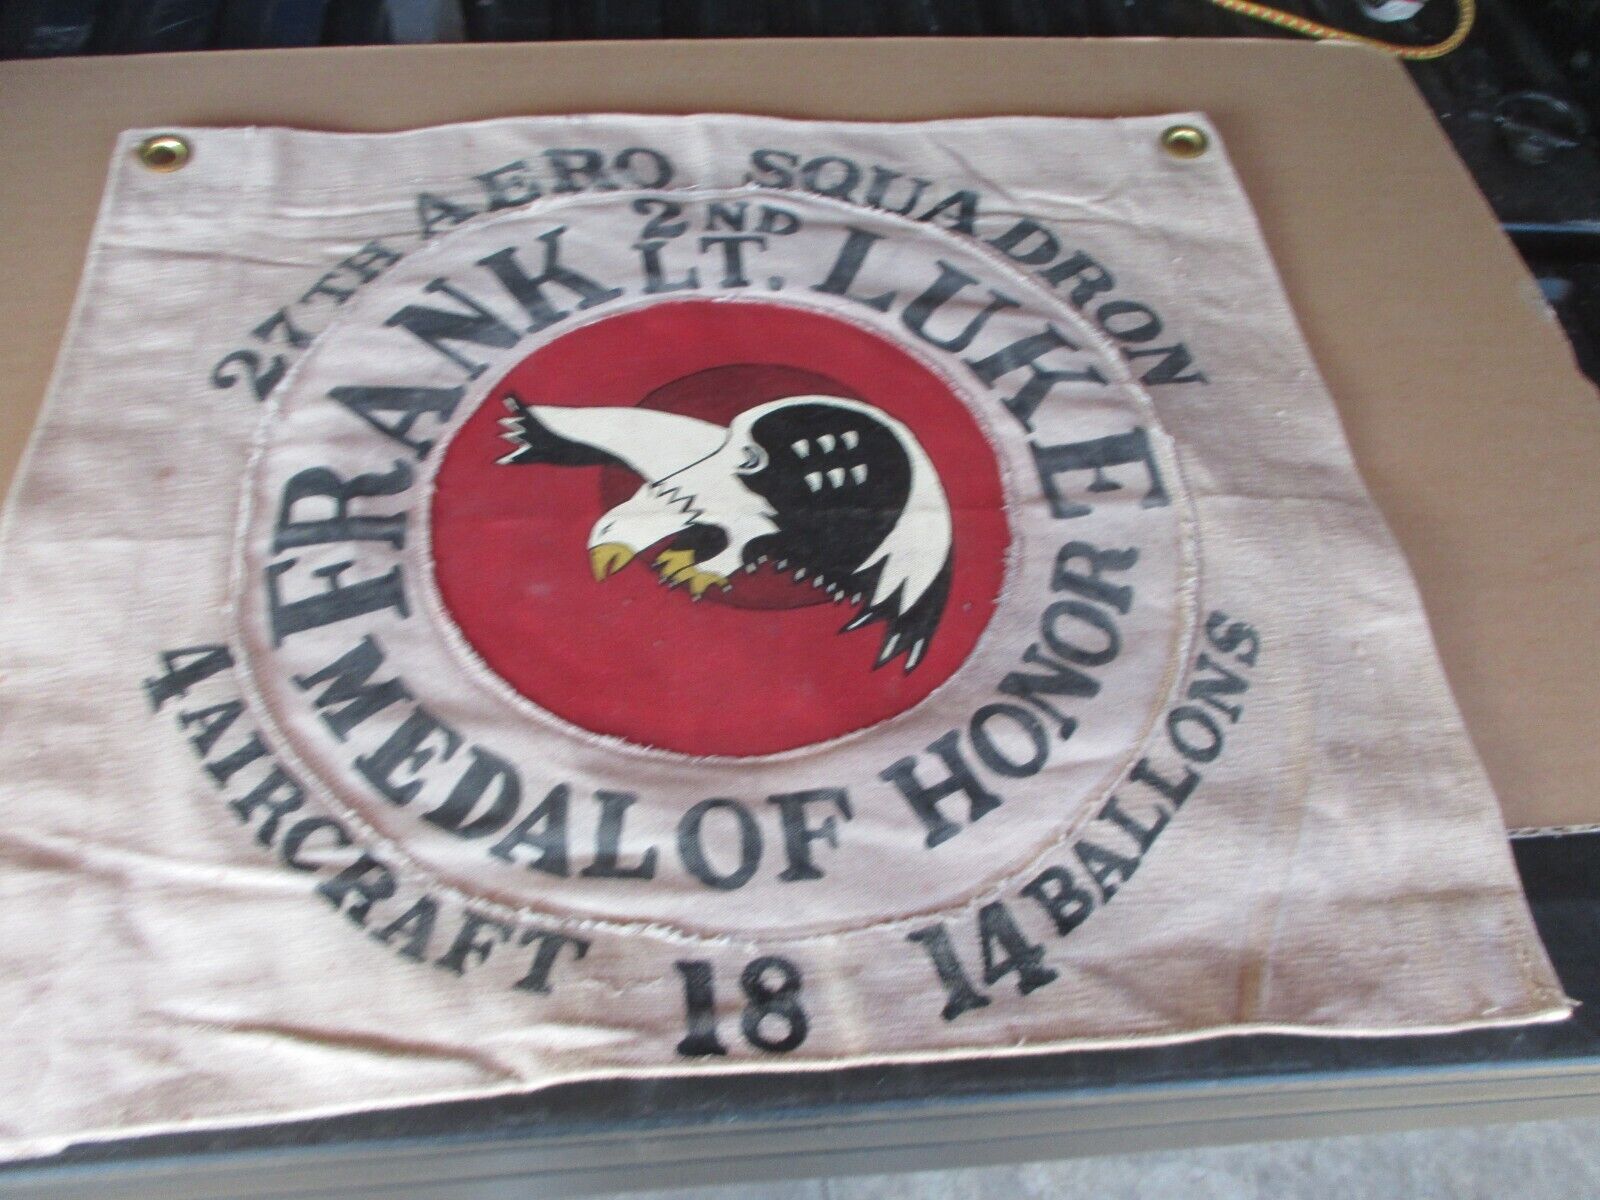 WWI USAS 2 ND LT FRANK LUKE MEDAL OF HONOR 27 TH AERO SQUADRON BARRACKS FLAG